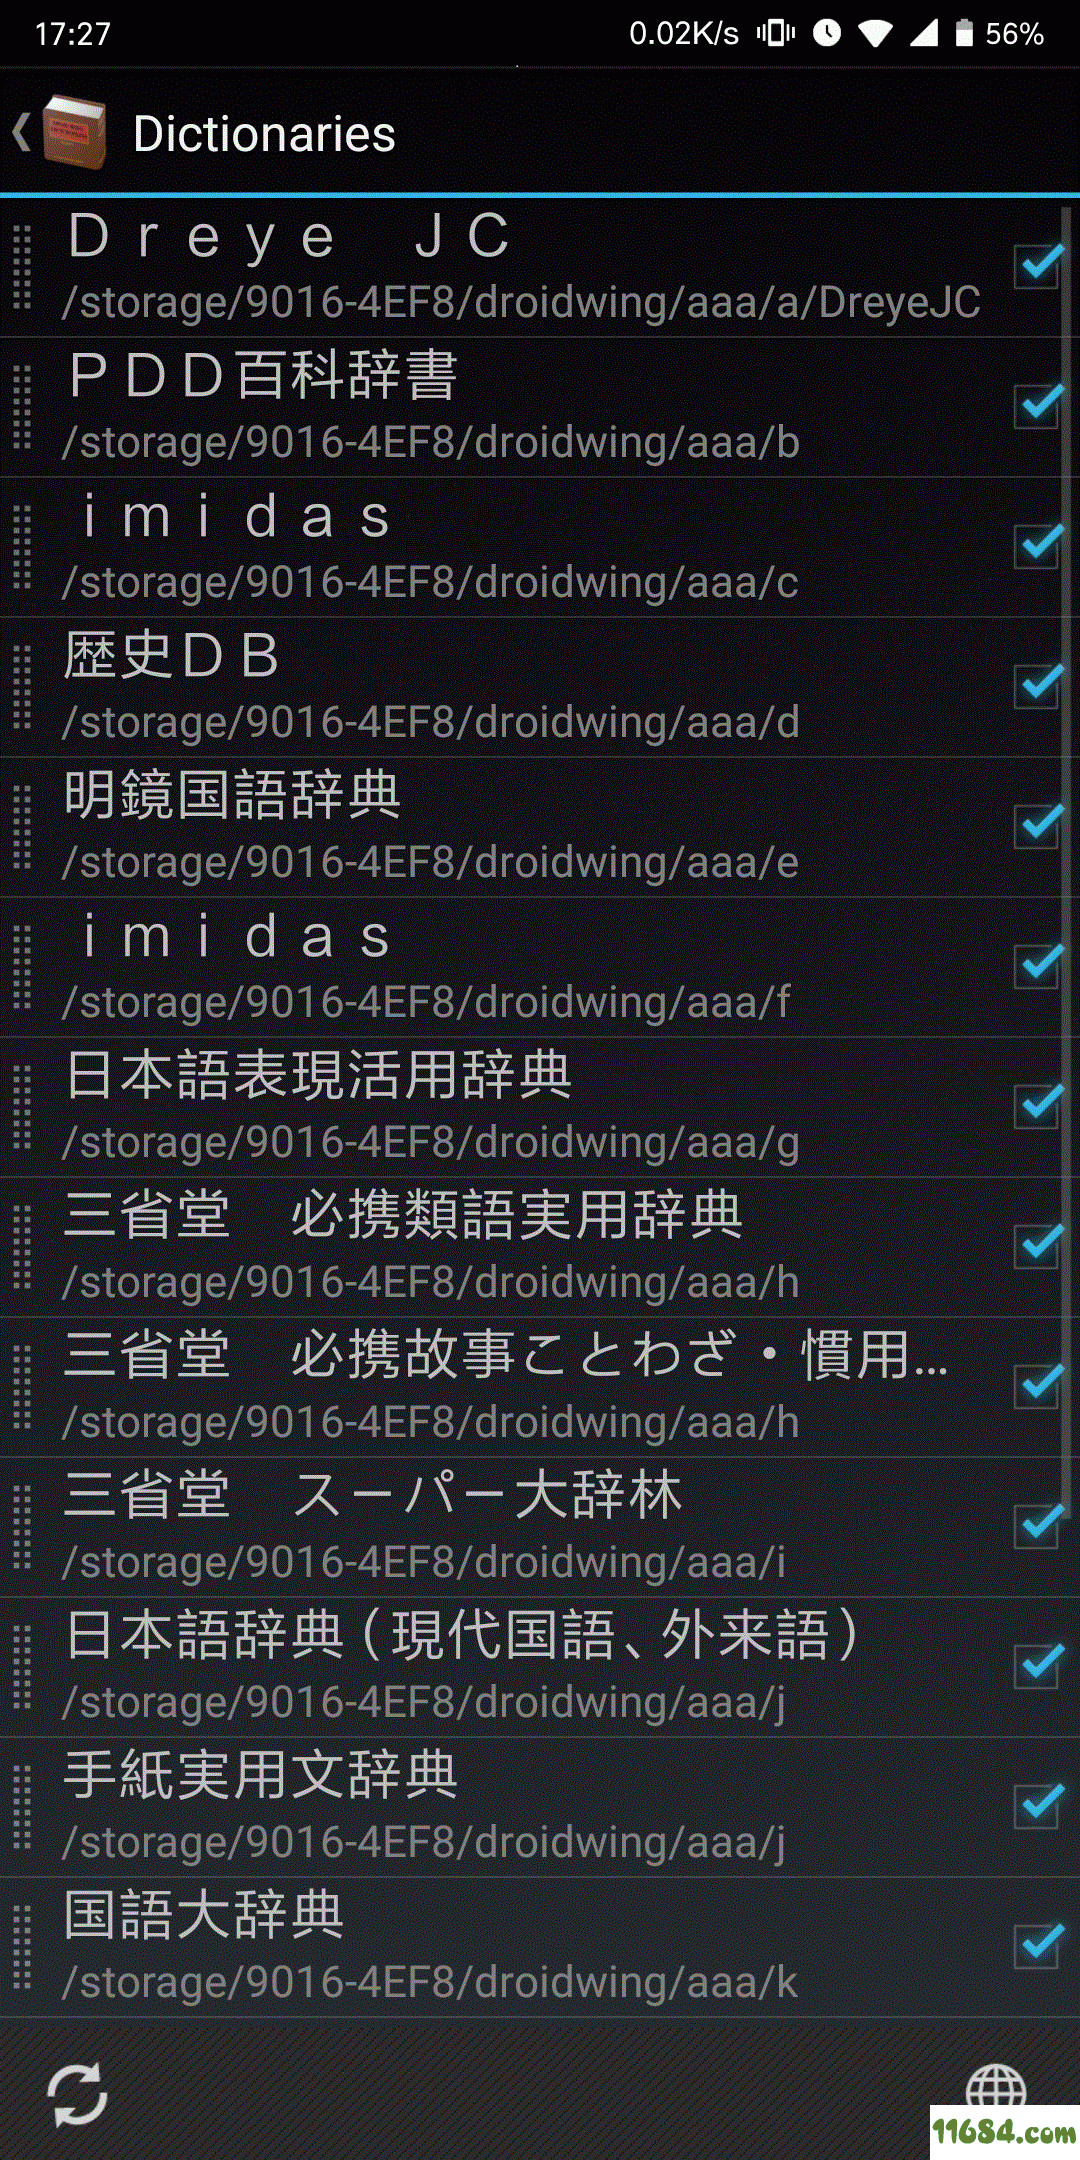 日语离线字典Droidwing 安卓版下载